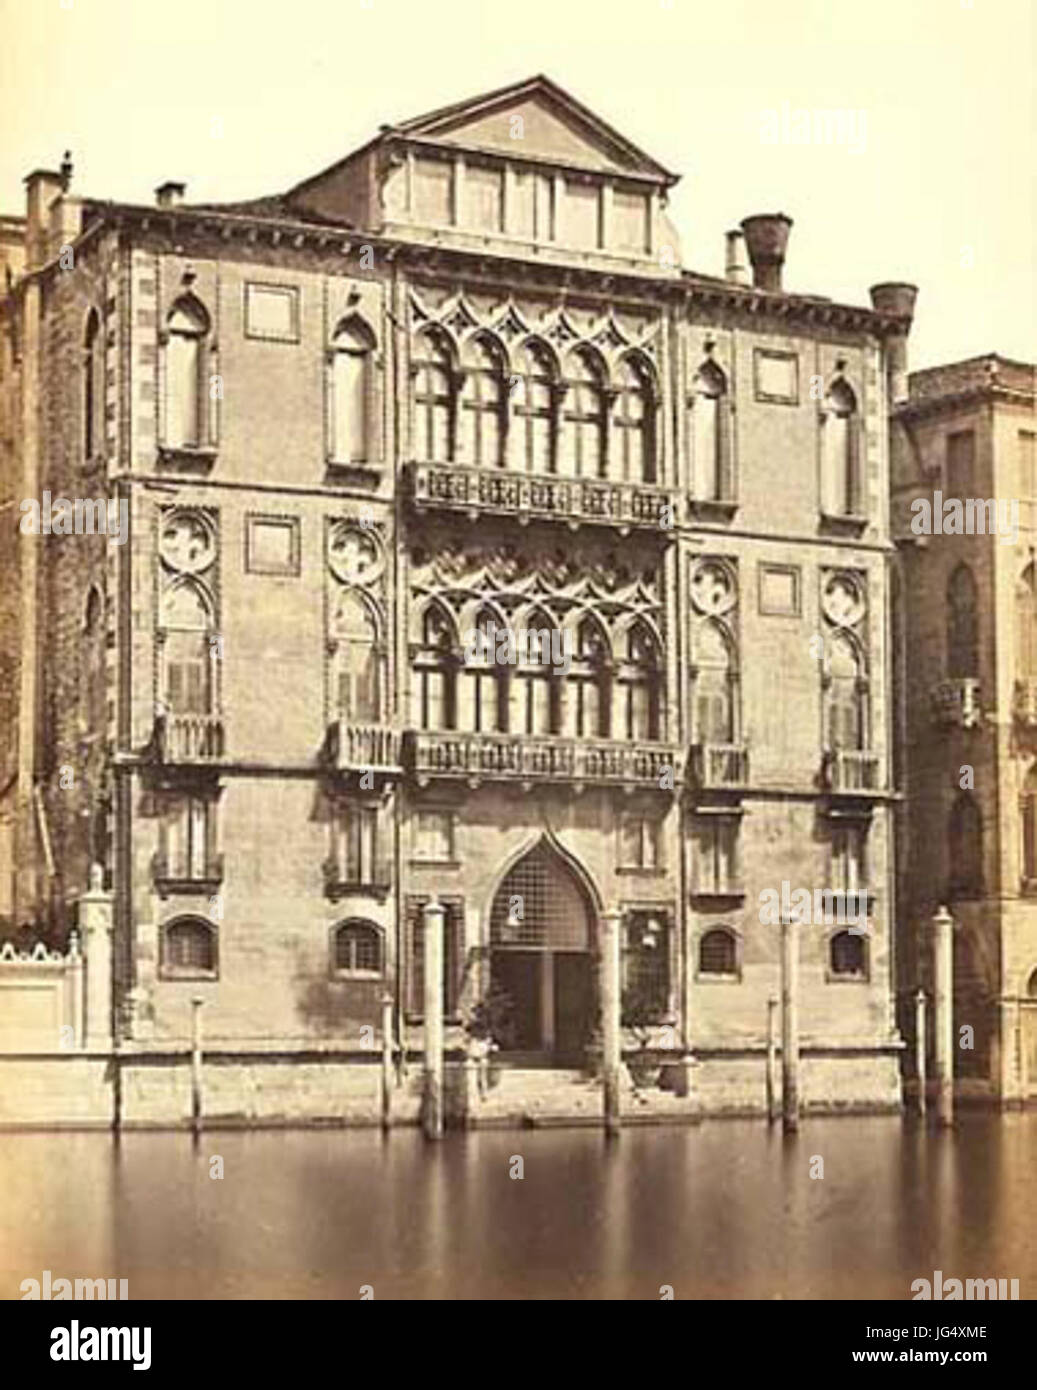 Carlo Ponti 28ca. 1823-189329 - Venezia - Palazzo Cavalli Foto de stock